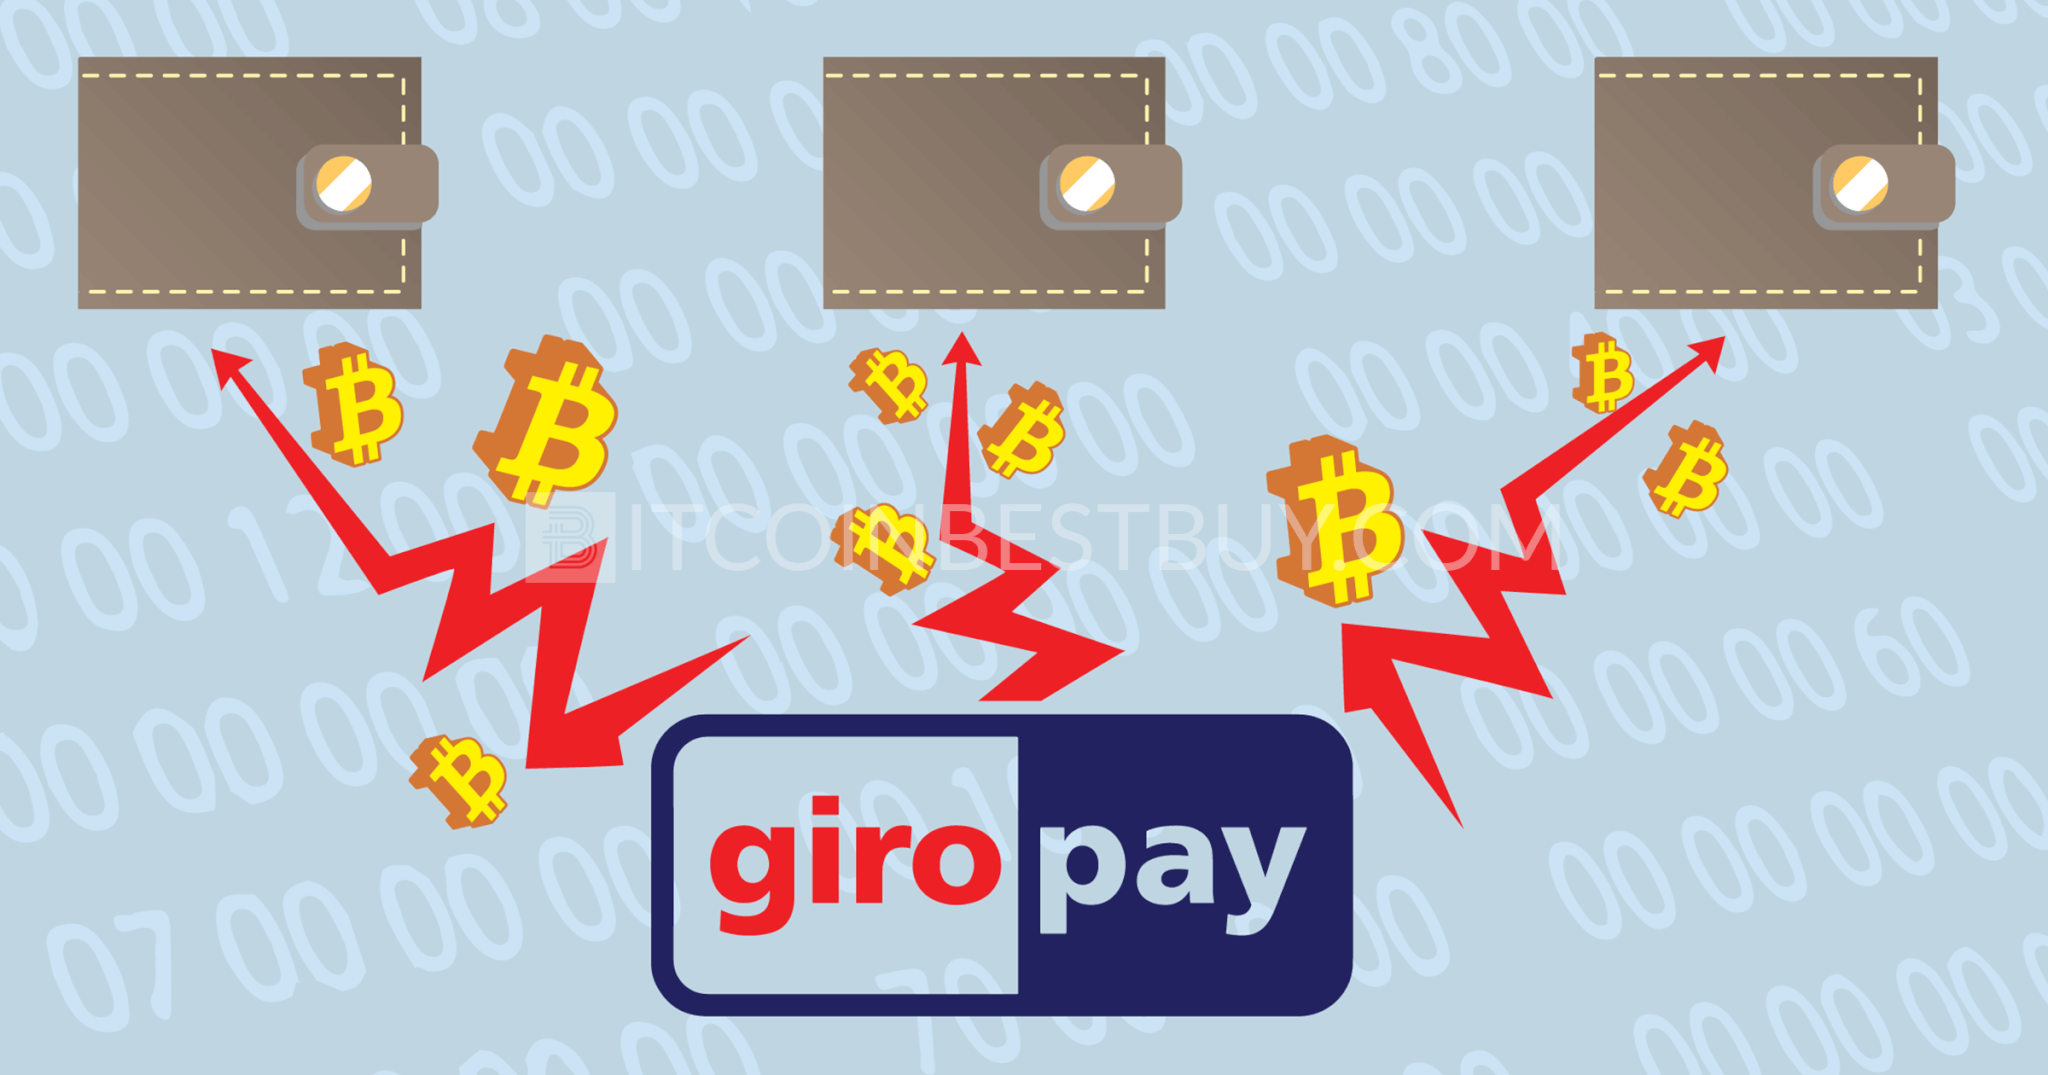 Bitcoin Giropay